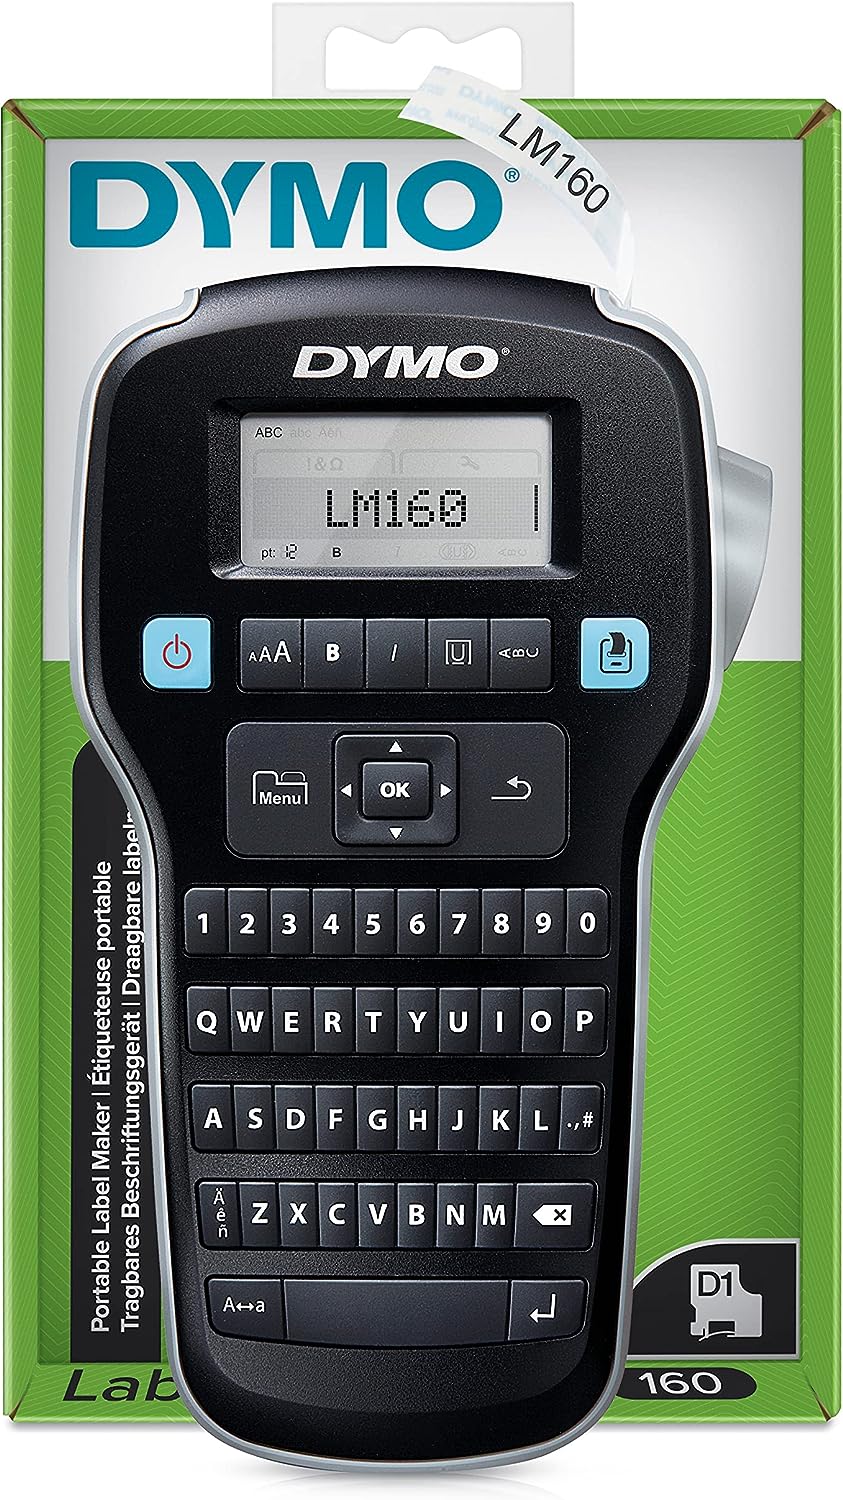 DYMO LabelManager 160 Etiquetadora | Impresora de Etiquetas de Mano con Teclado QWERTY | Incluye Cinta de Etiquetas D1 en Blanco y Negro (12 mm) | para el hogar y la Oficina